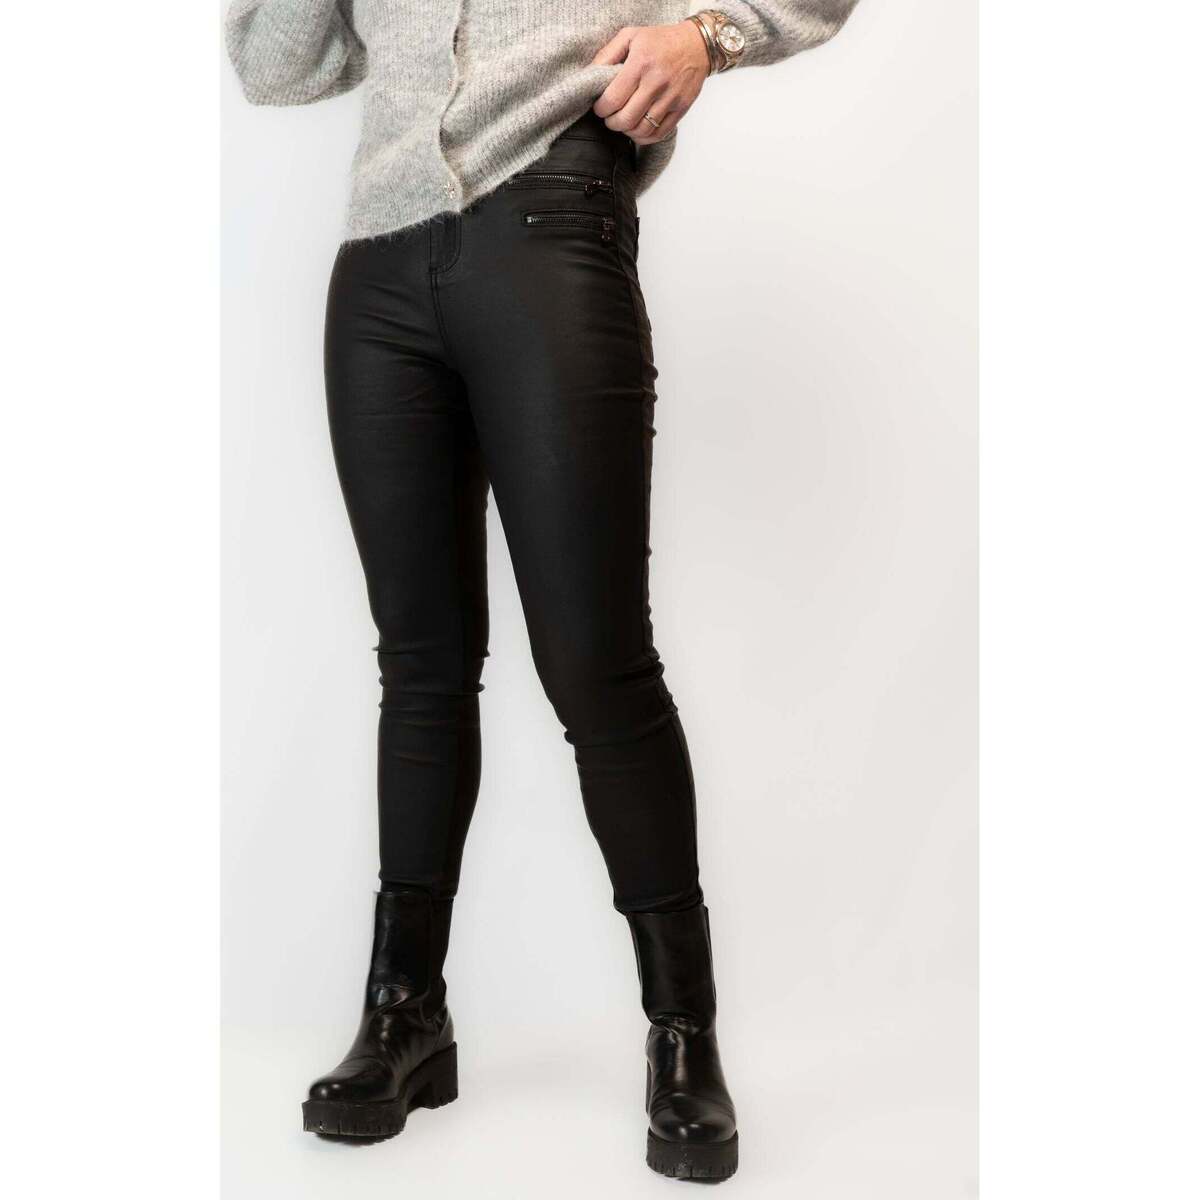 Vêtements Femme Pantalons Elegance Bien Et Pantalon noir Milan Noir